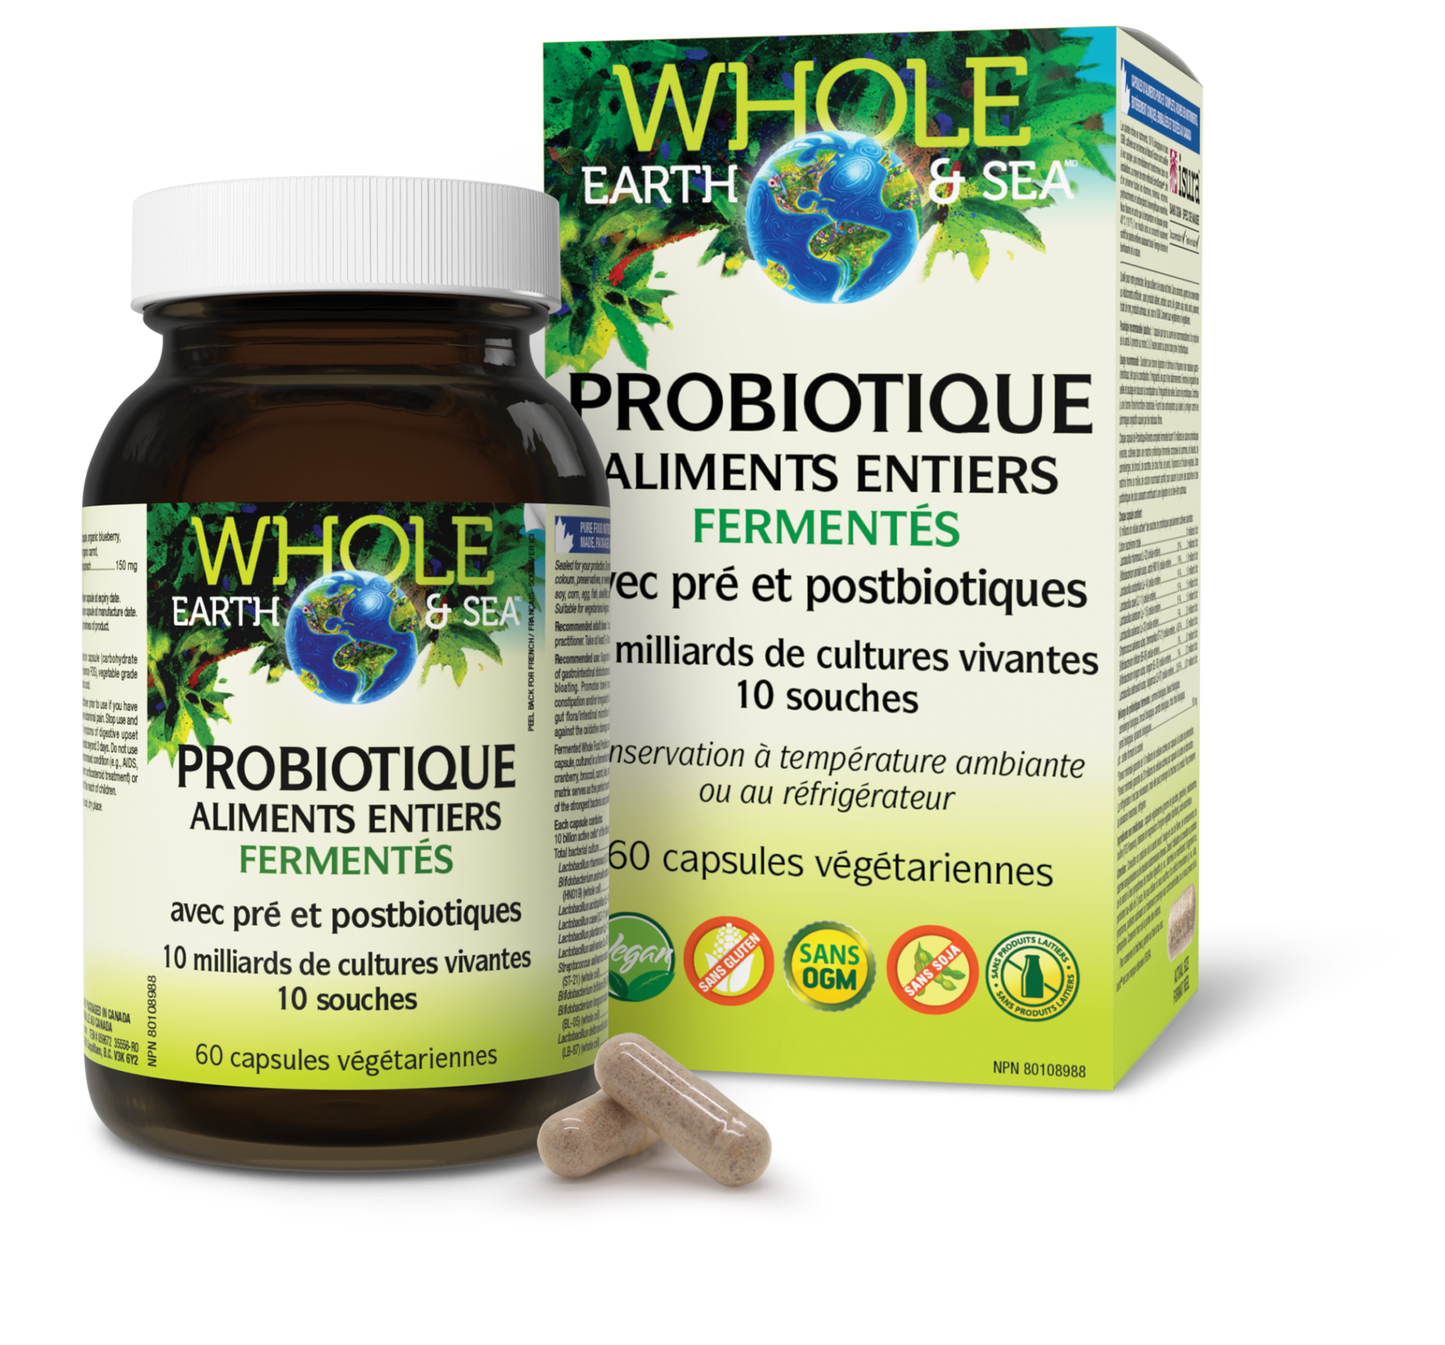 Probiotique Aliments entiers fermentés 10 milliards de cellules actives, Whole Earth & Sea, Whole Earth & Sea®|v|image|35556